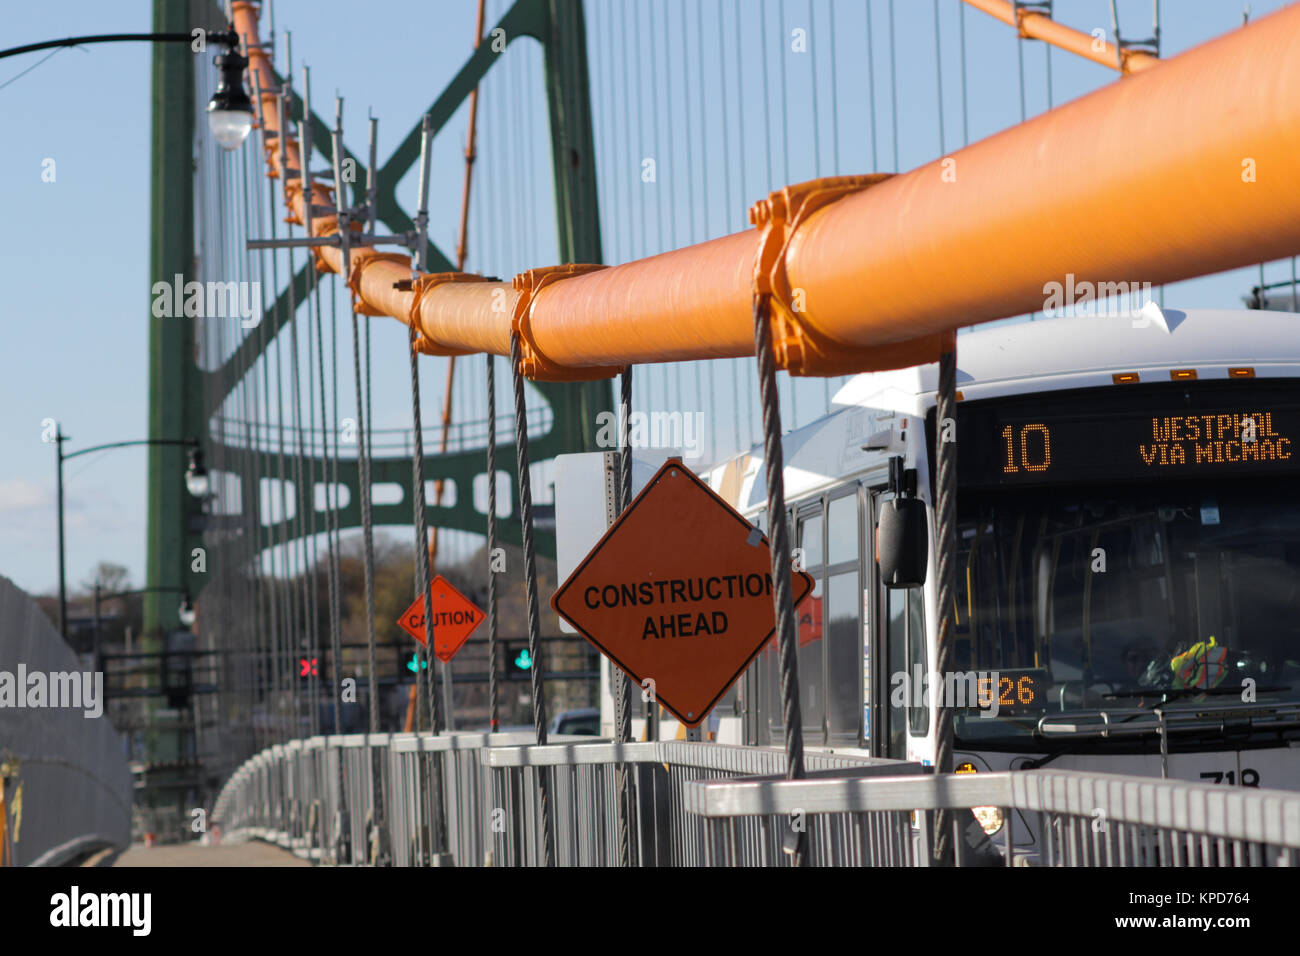 Il Macdonald ponte in Halifax, N.S., nov. 4, 2017. La stampa canadese immagini/Lee Brown Foto Stock